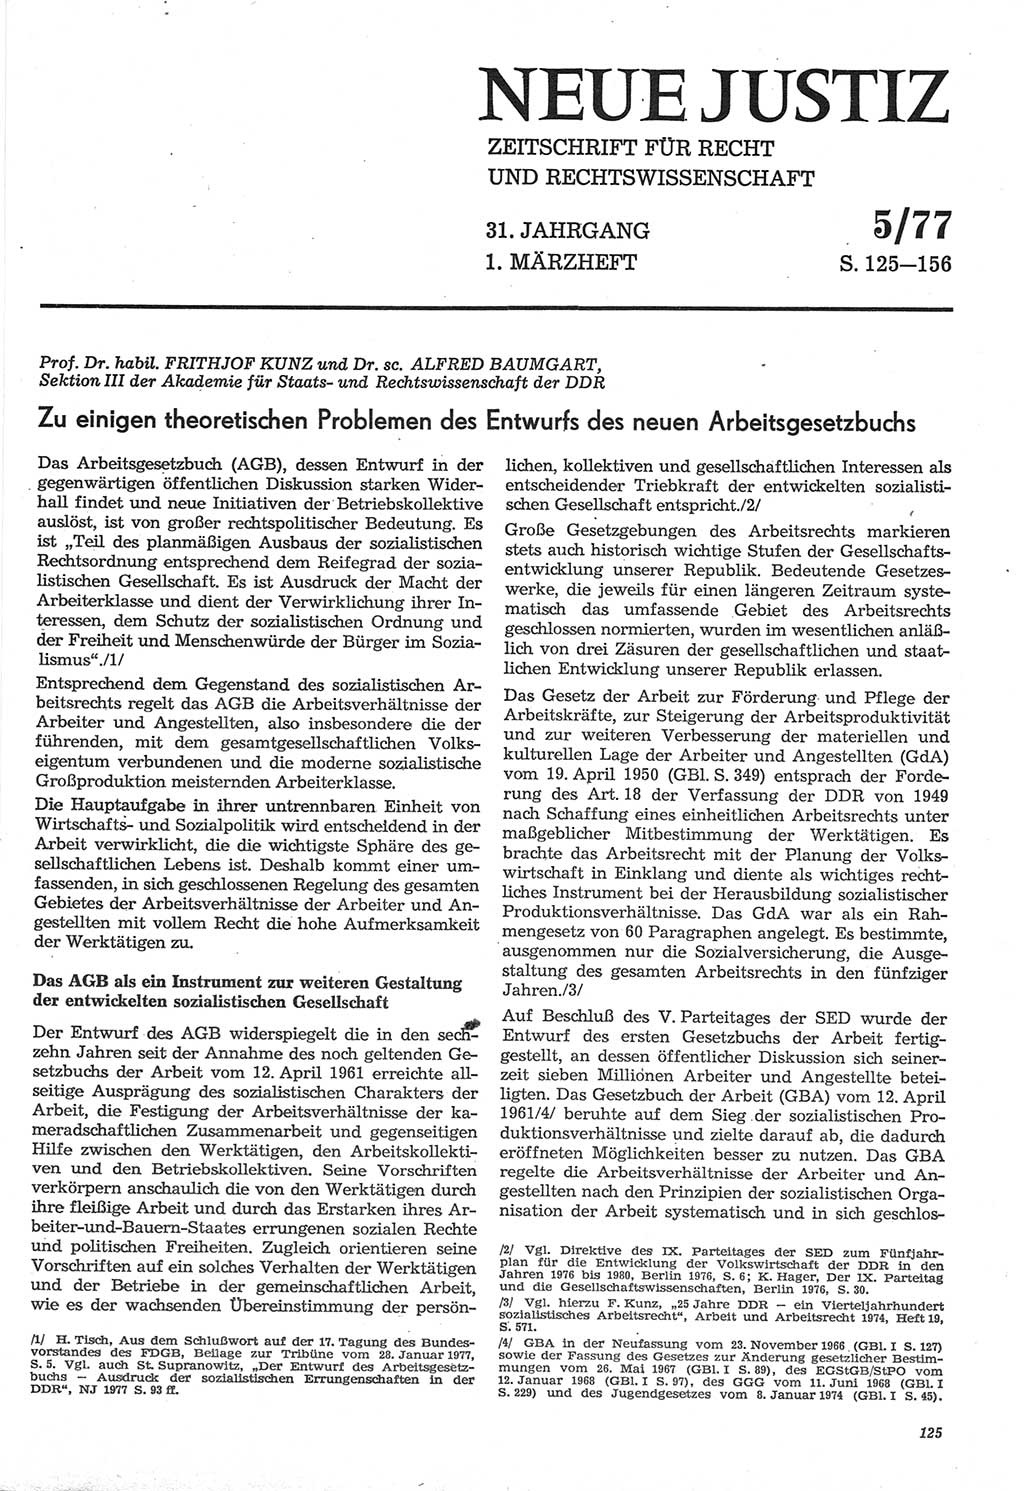 Neue Justiz (NJ), Zeitschrift für Recht und Rechtswissenschaft-Zeitschrift, sozialistisches Recht und Gesetzlichkeit, 31. Jahrgang 1977, Seite 125 (NJ DDR 1977, S. 125)